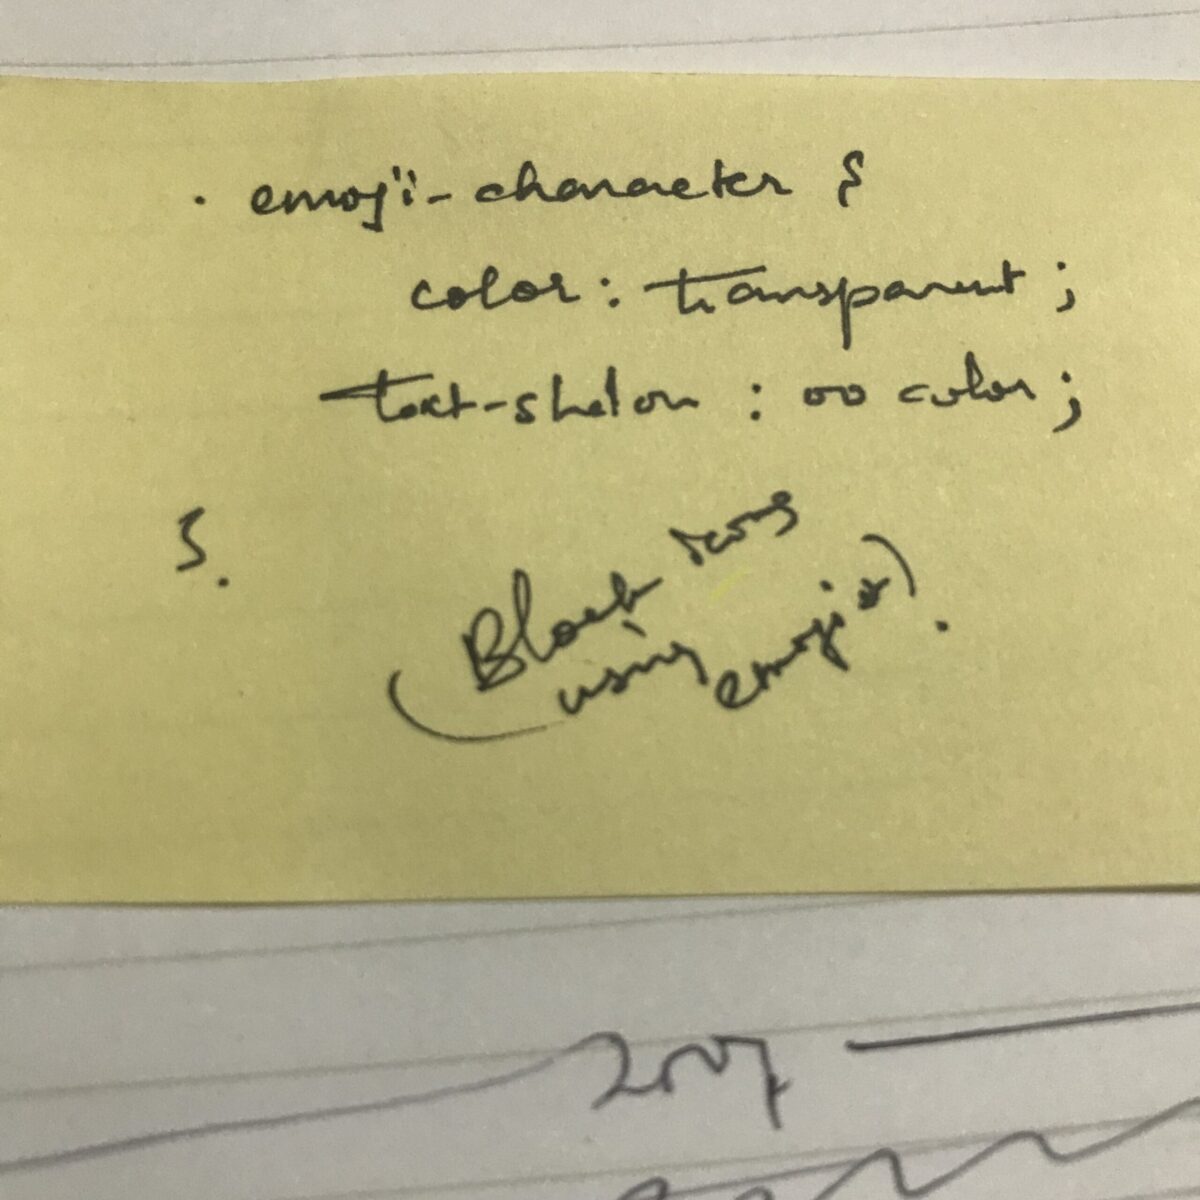 Papier jaune non ligné avec code manuscrit en cursif à l'encre noire.